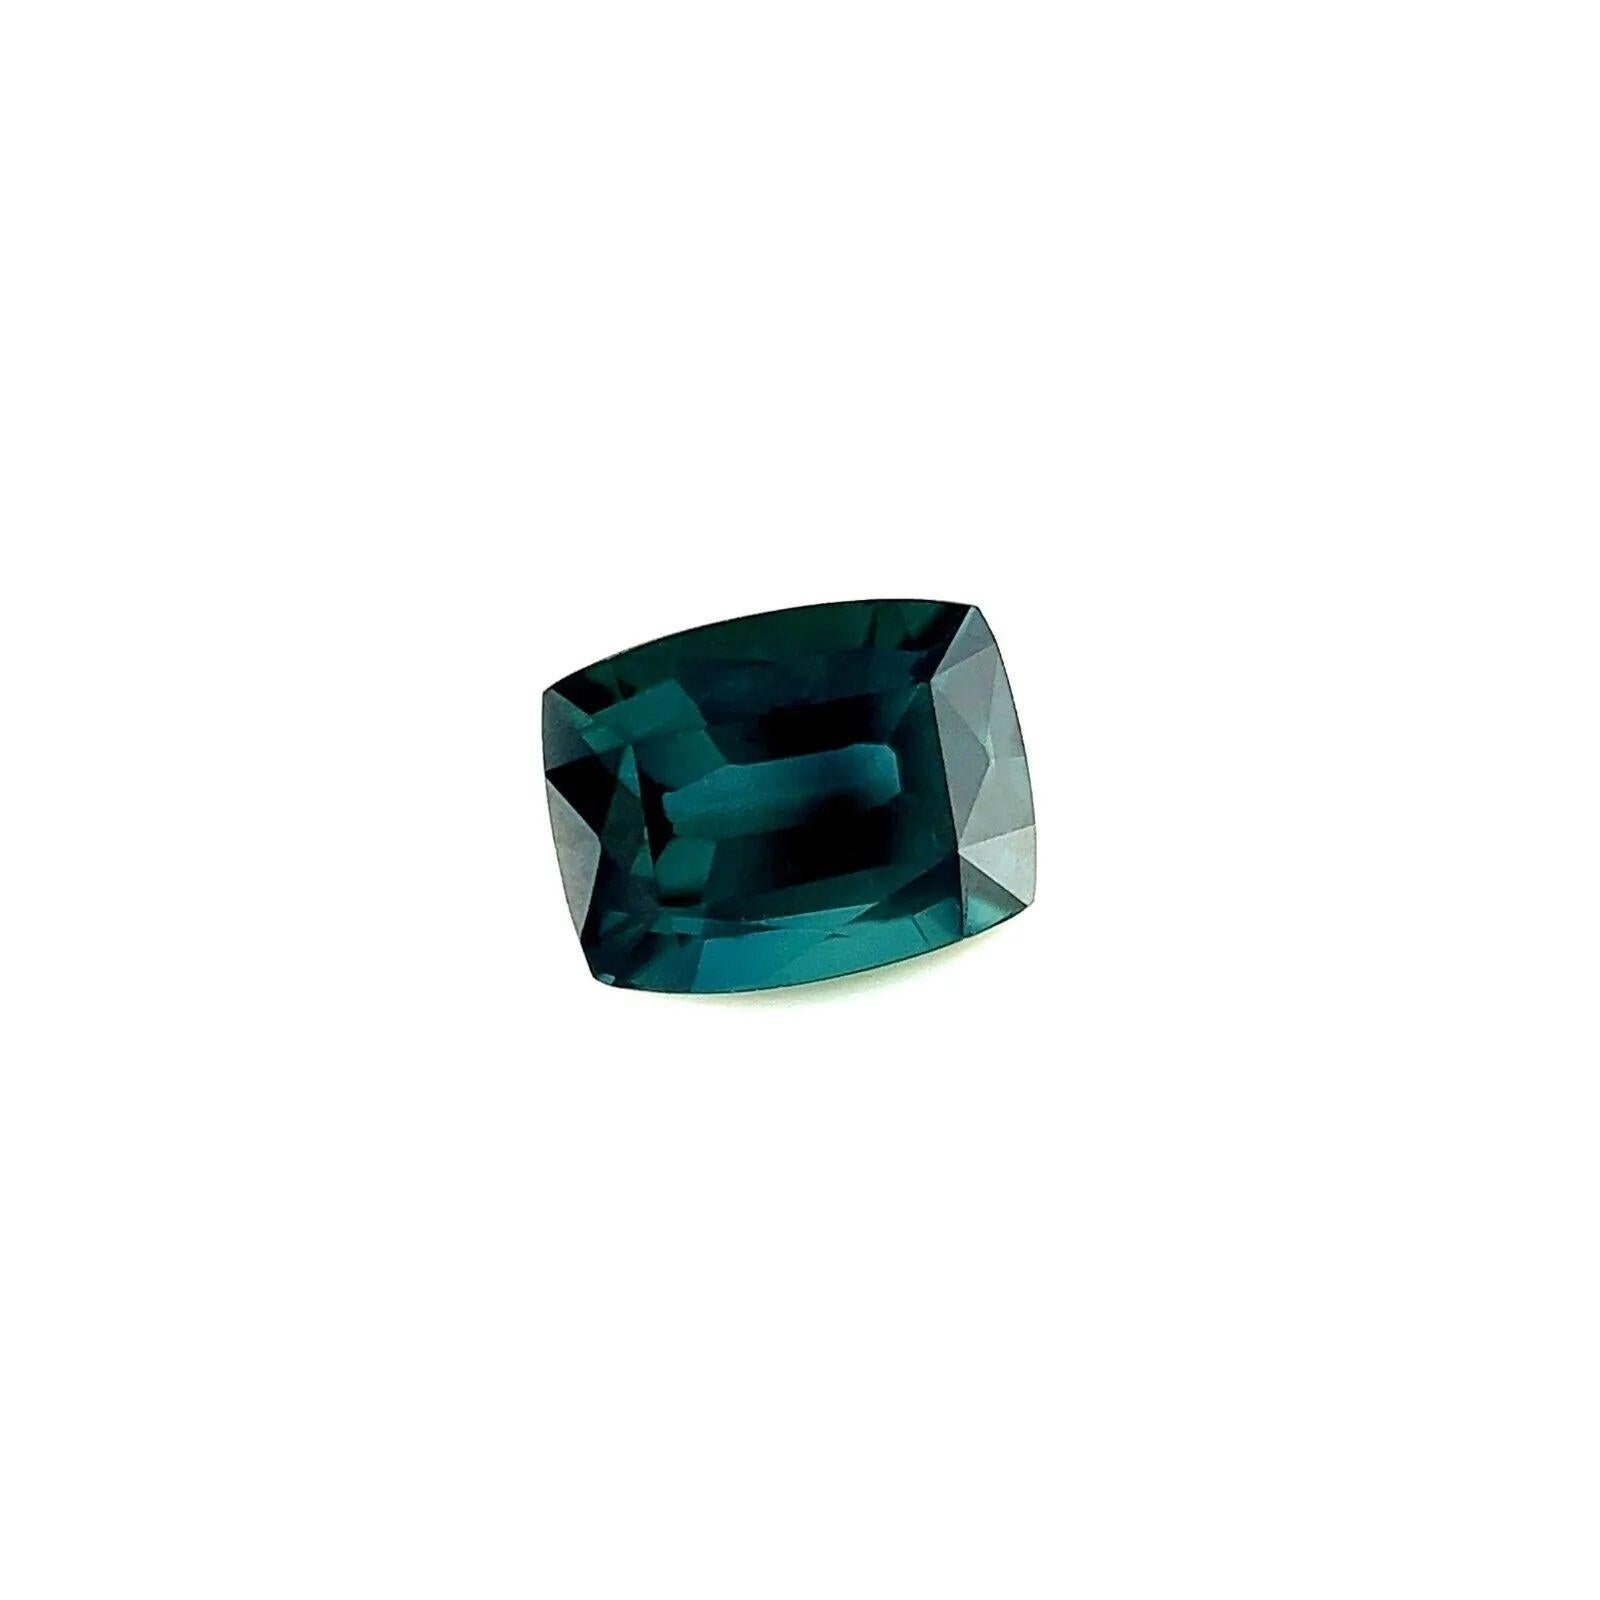 GRA Certified 1.04ct Green Blue Sapphire Rare Cushion Cut Gem 6.4x5mm VVS

Pierre précieuse saphir bleu vert certifiée GRA.
Saphir de 1,04 carat avec une belle couleur bleue verdâtre profonde.
Entièrement certifié par GRA confirmant que la pierre